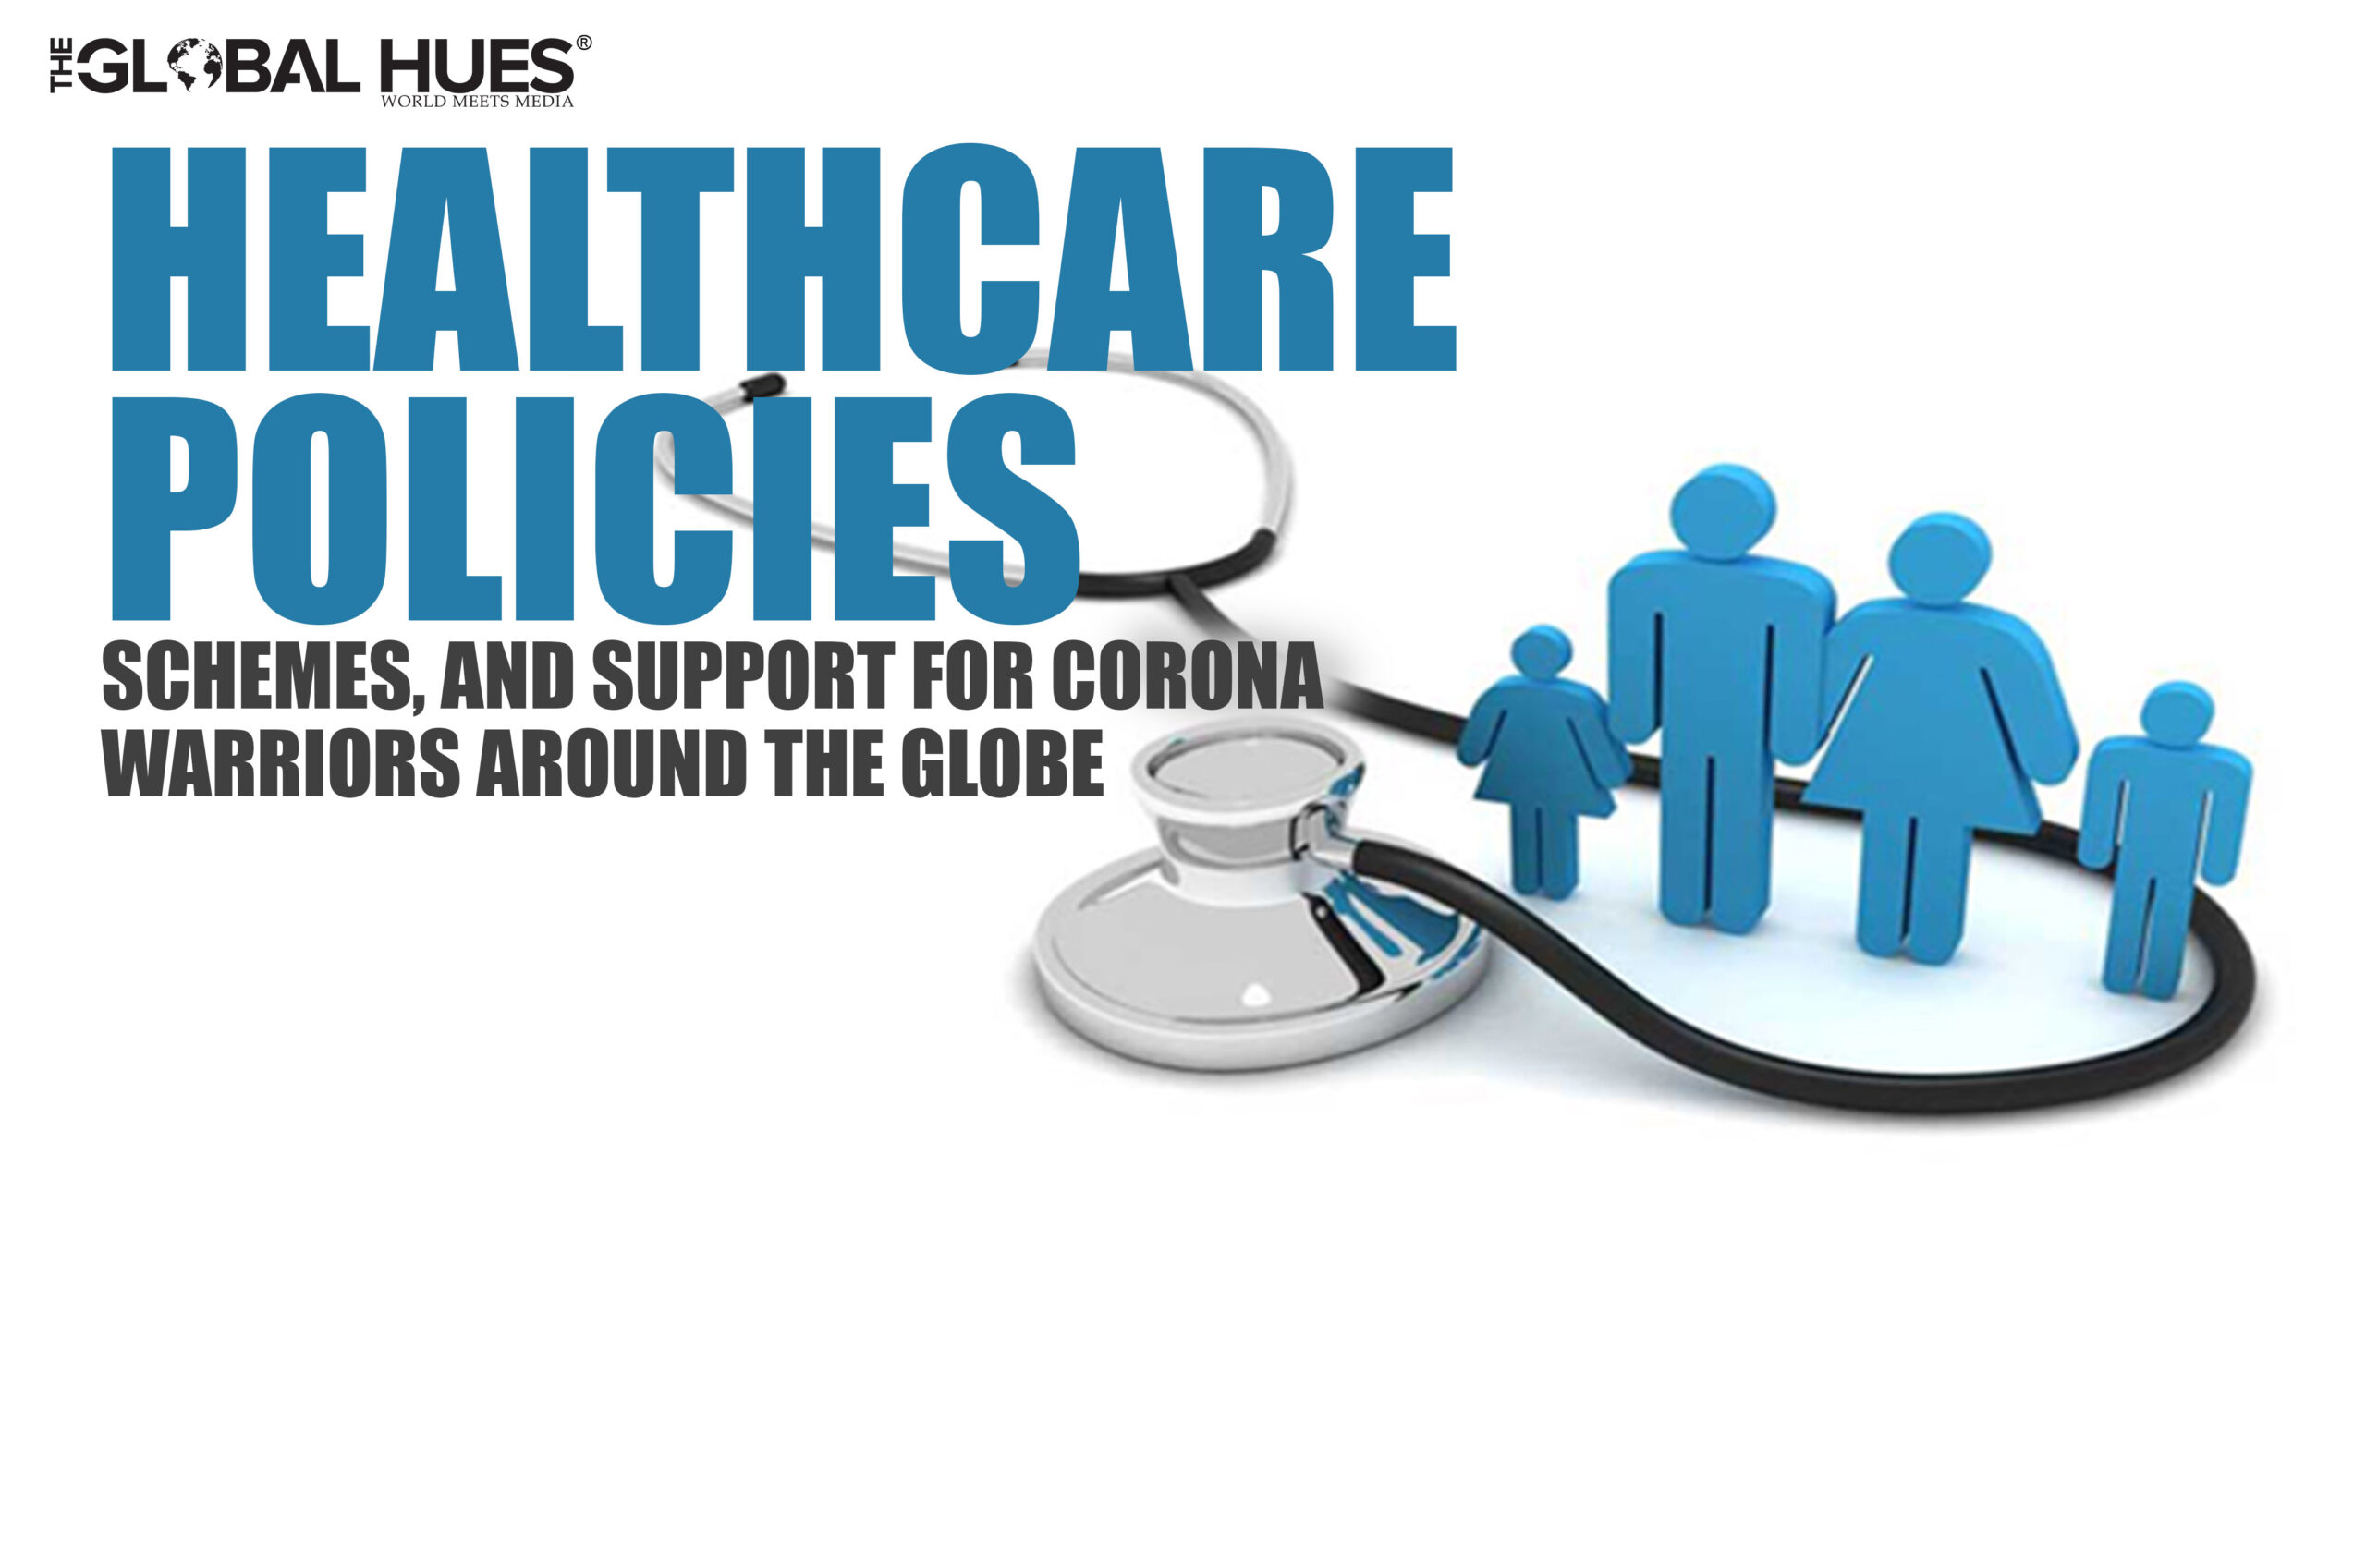 HEALTHCARE policies